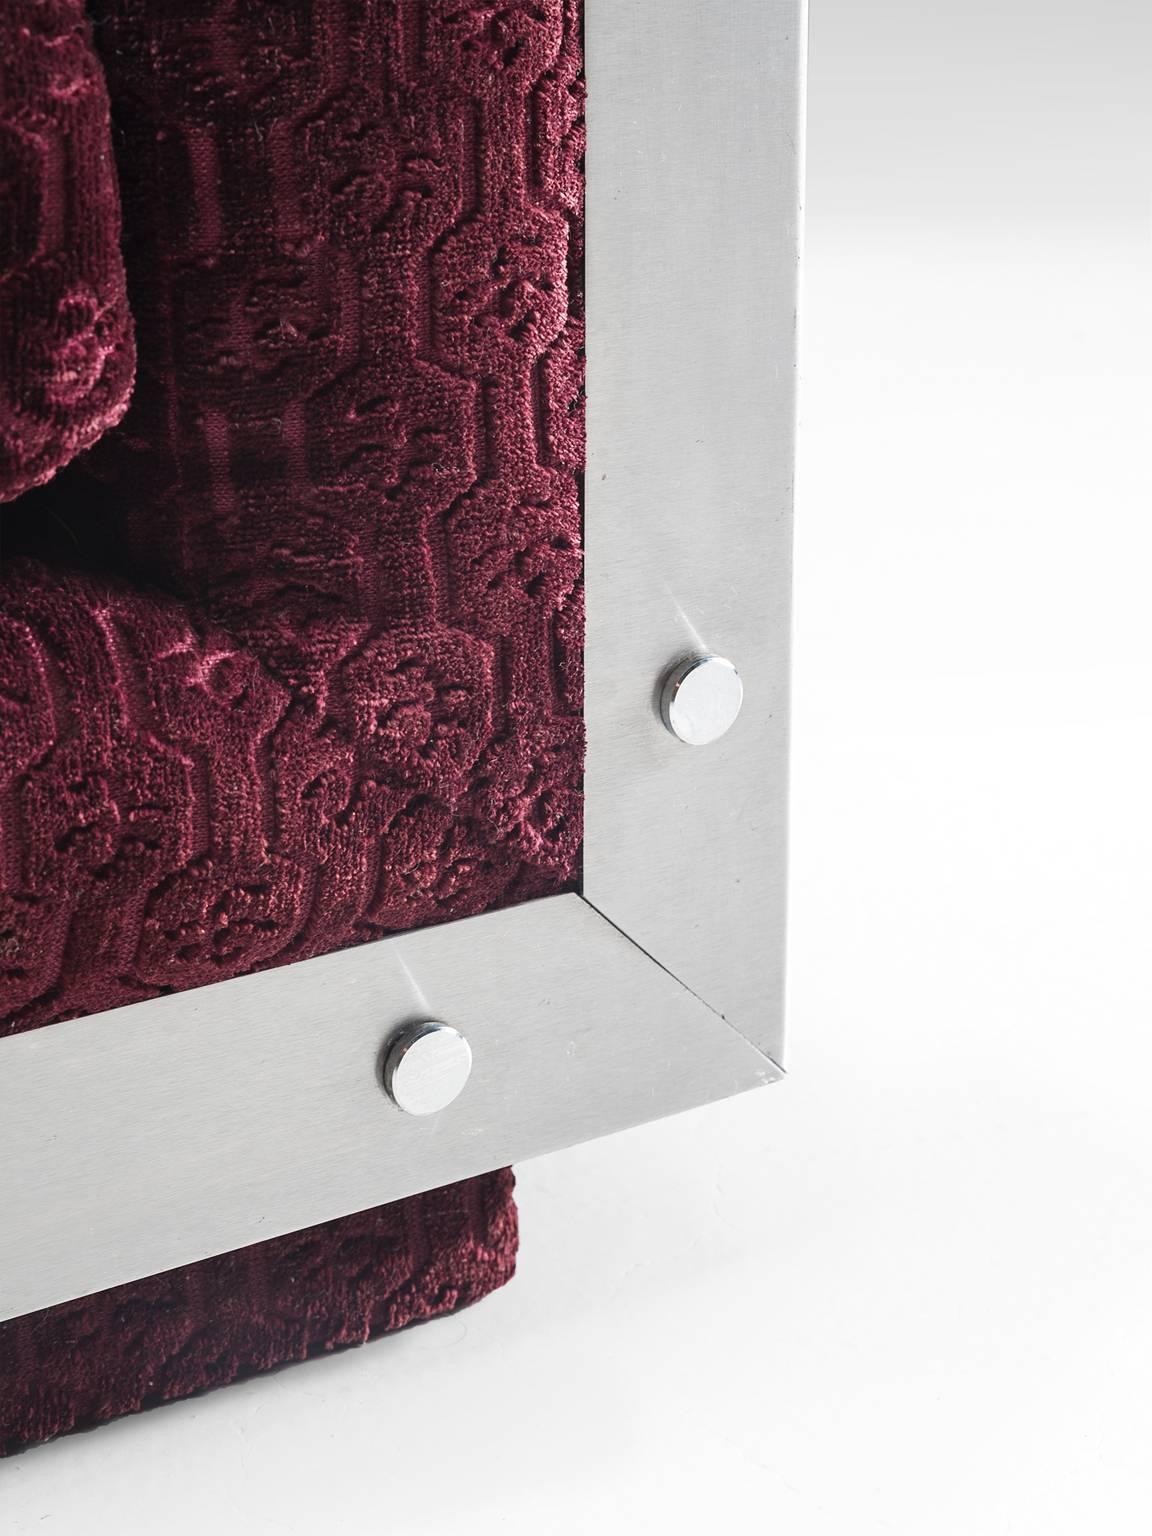 French Sofa in Stainless Steel and Burgundy Velvet Upholstery 3